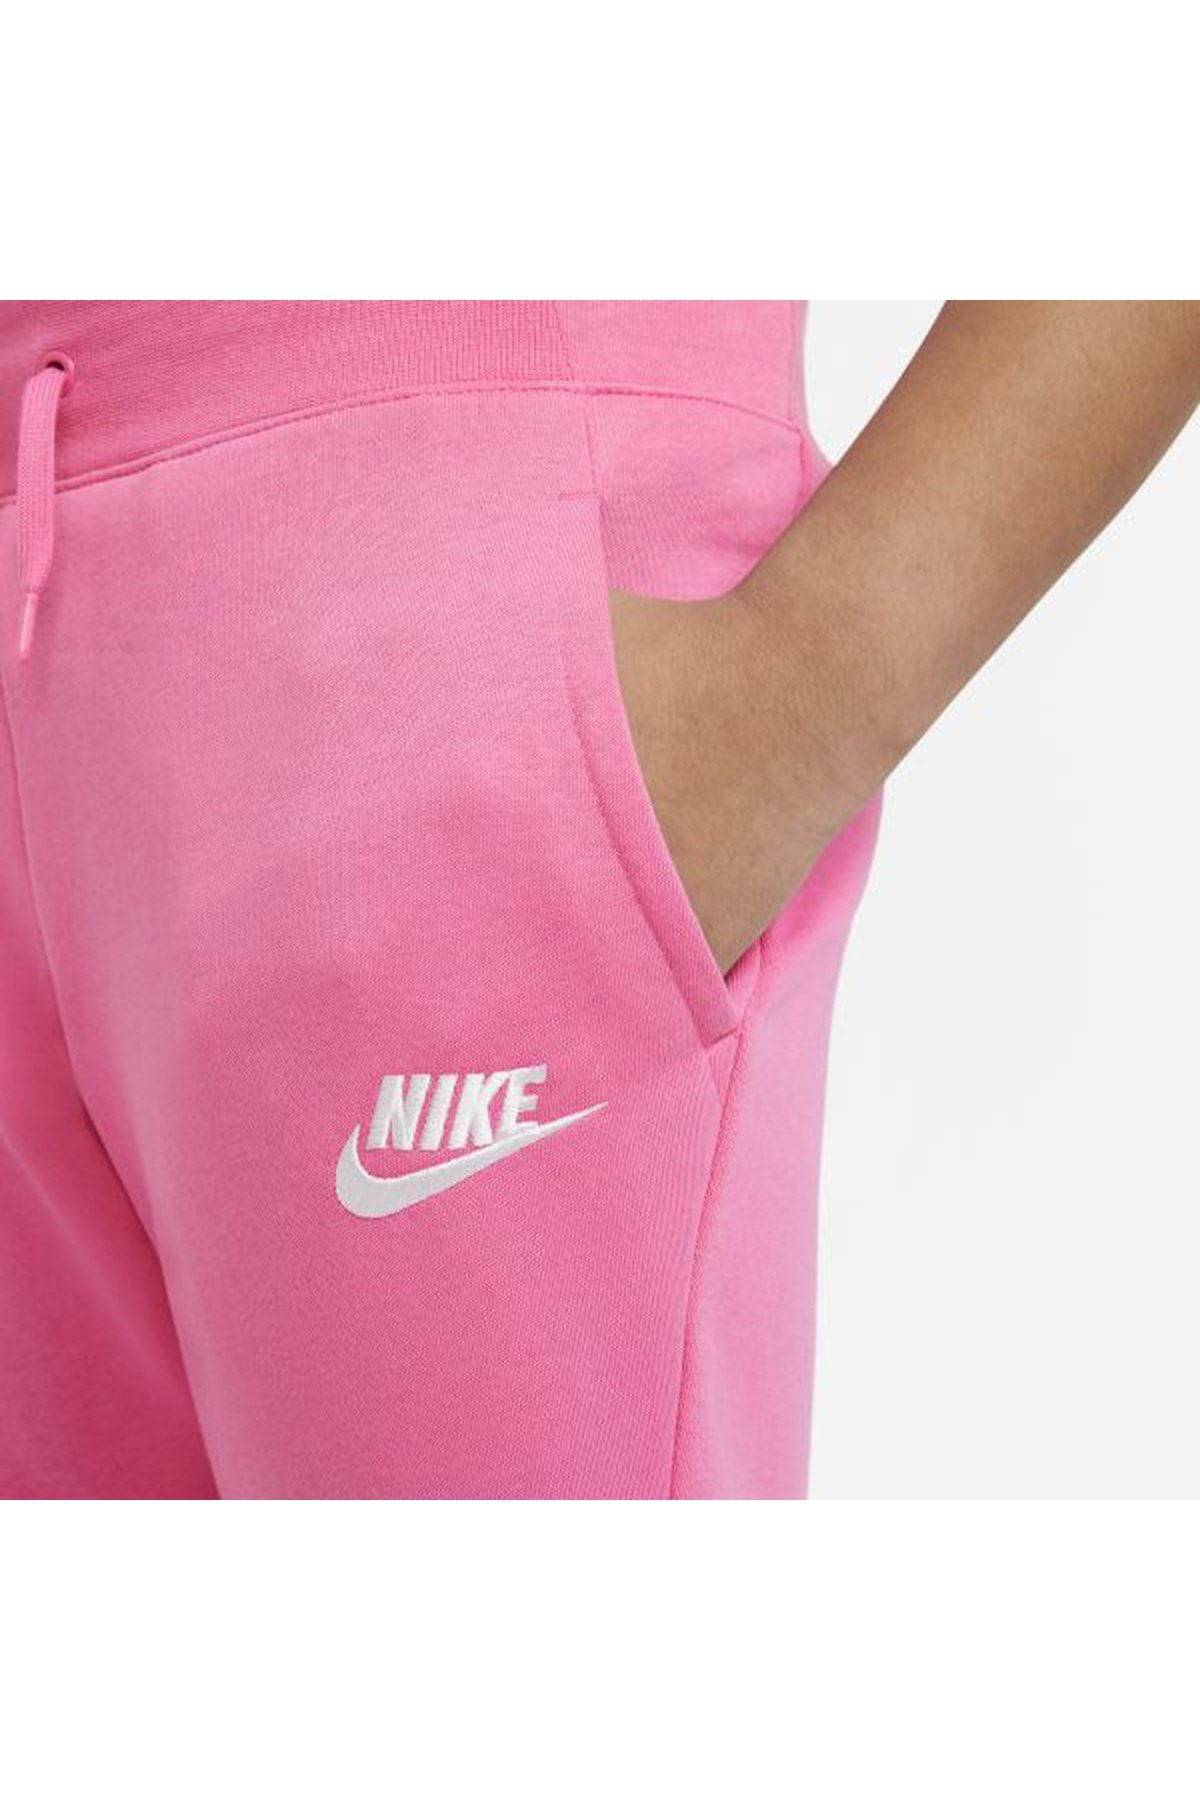 Nike Studıo Flc Pant Pembe Kız Çocuk Tekalt Dj0690-684